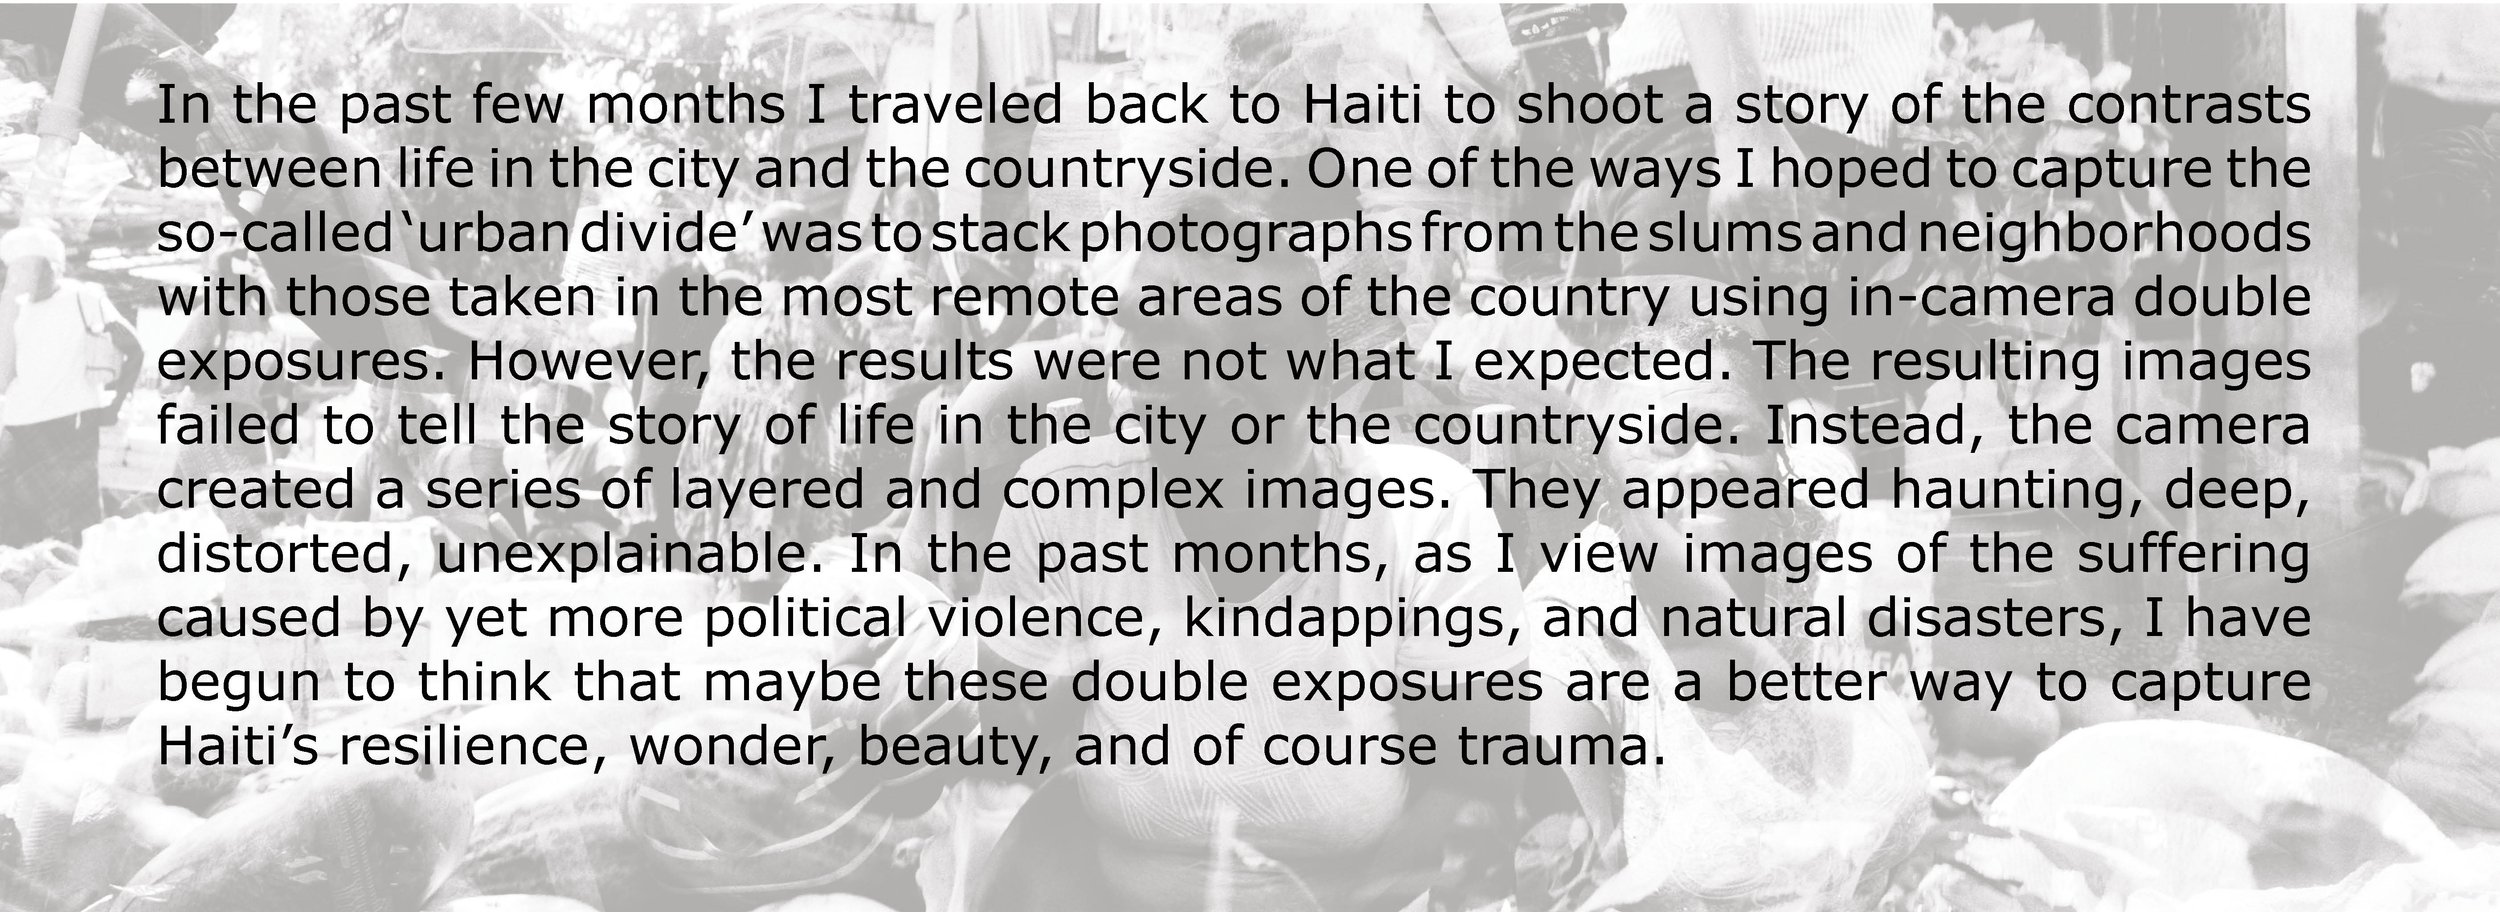 Haiti_Double exposure.jpg